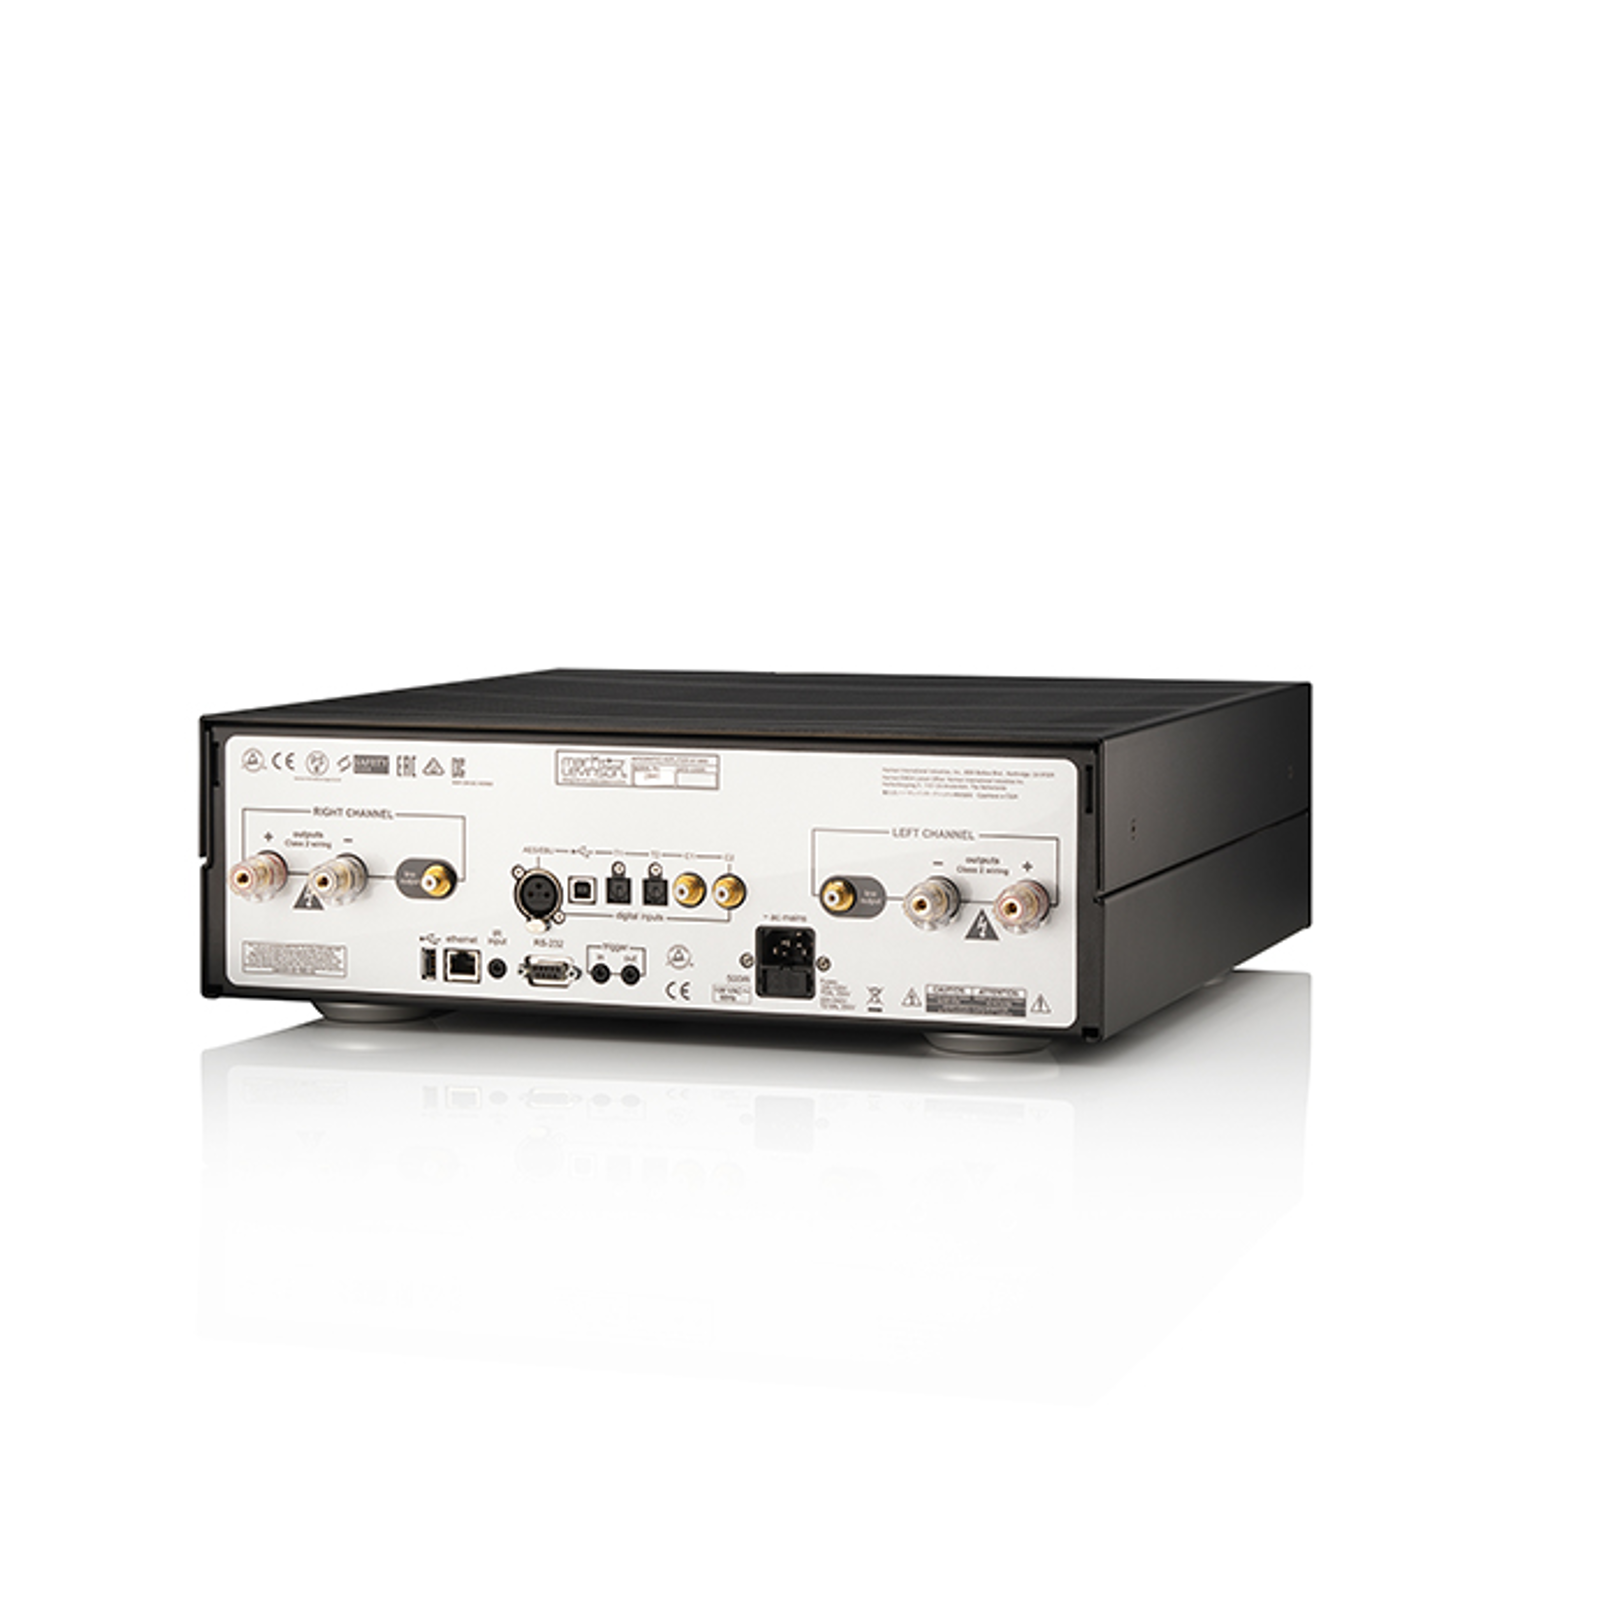 № 5802 - Black / Silver - Integrated Amplifier for Digital sources - Detailshot 1